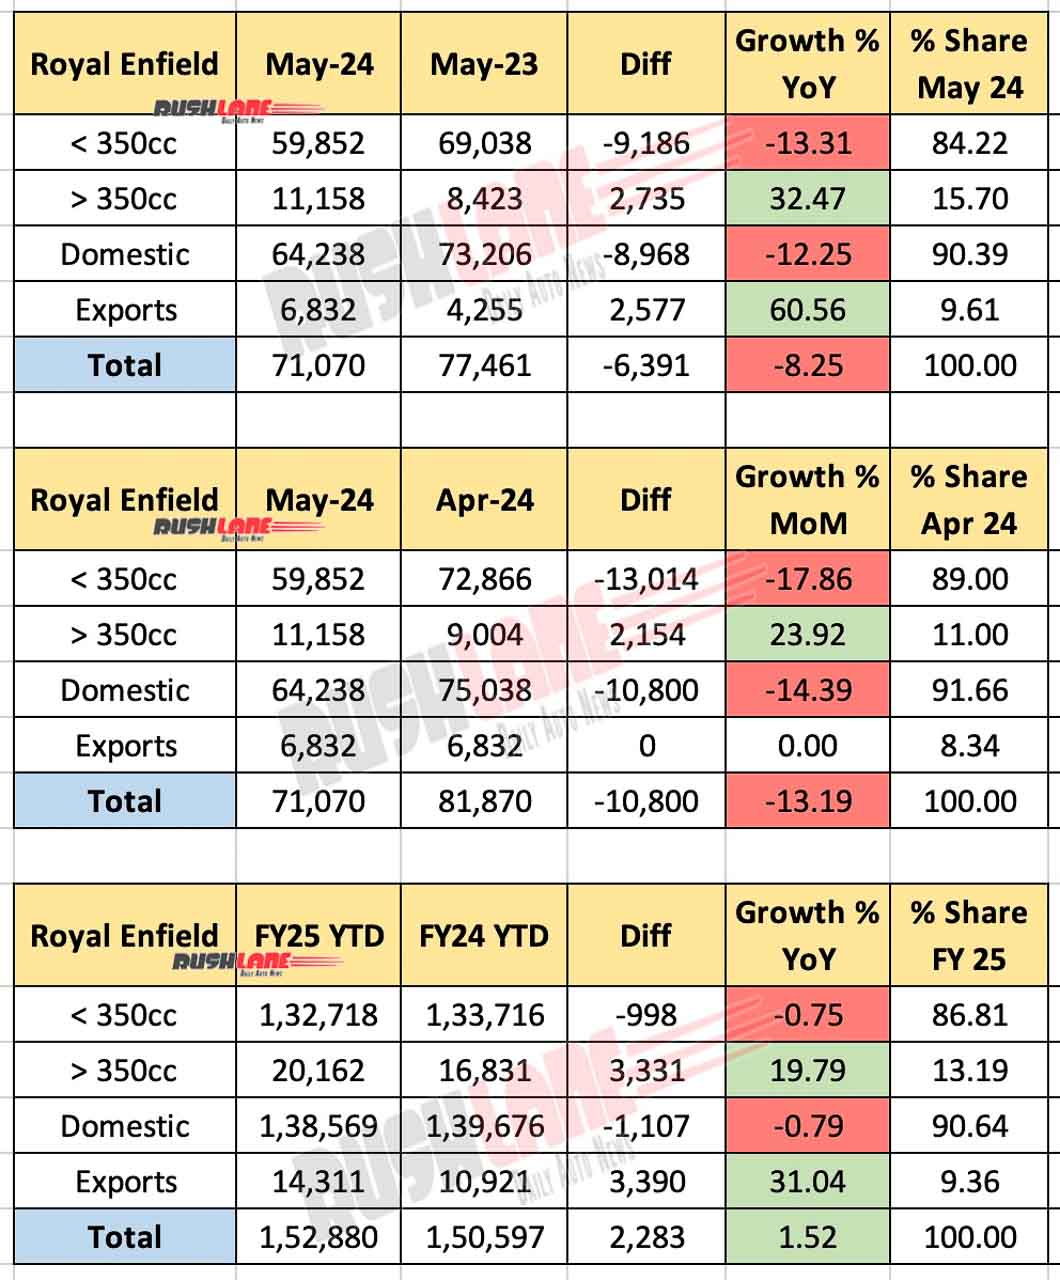 Royal Enfield Sales May 2024